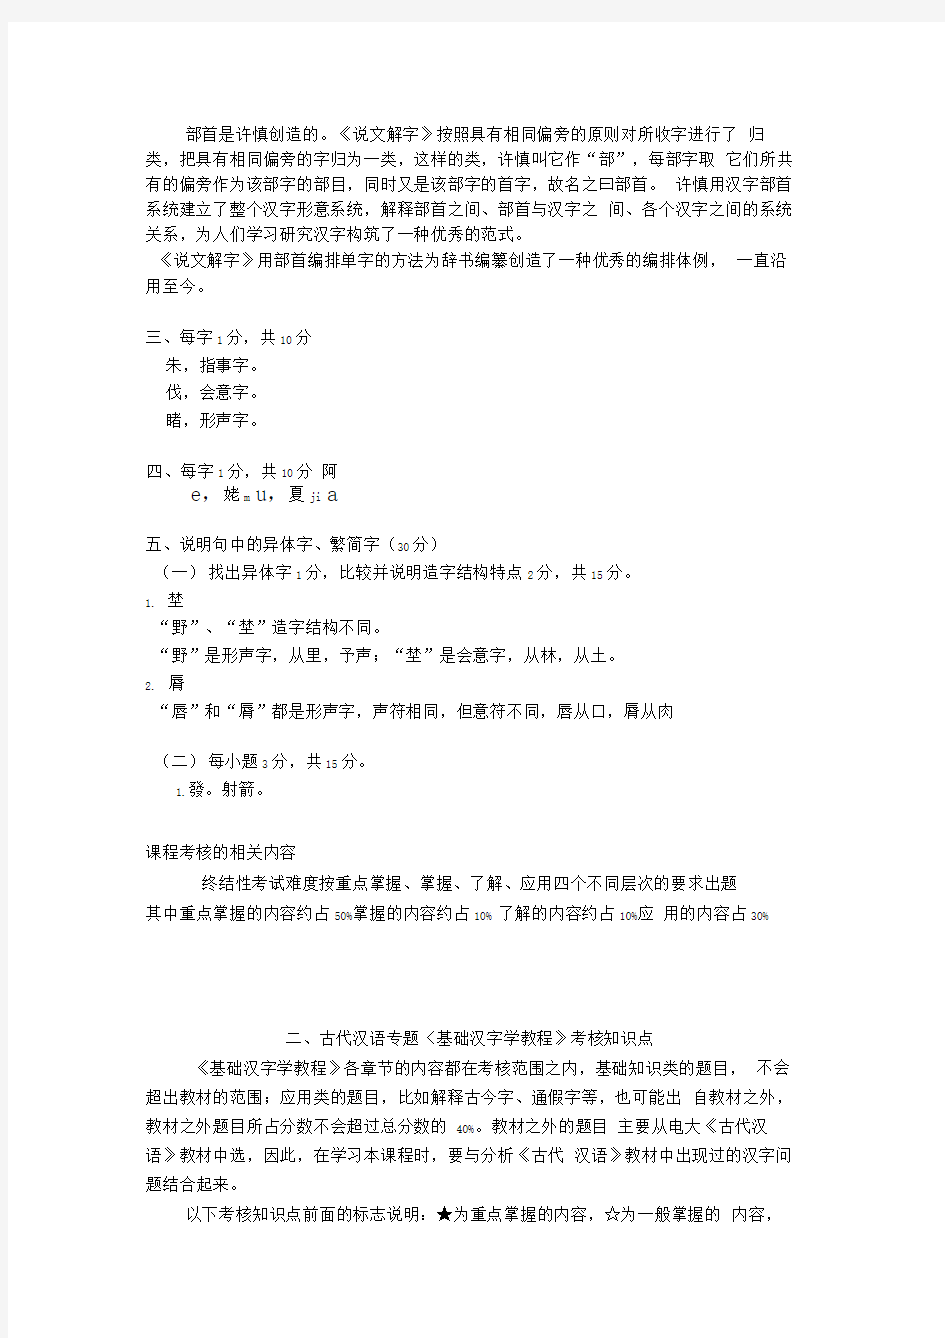 古代汉语专题基础汉字学教程试题解答举例及考核知识点